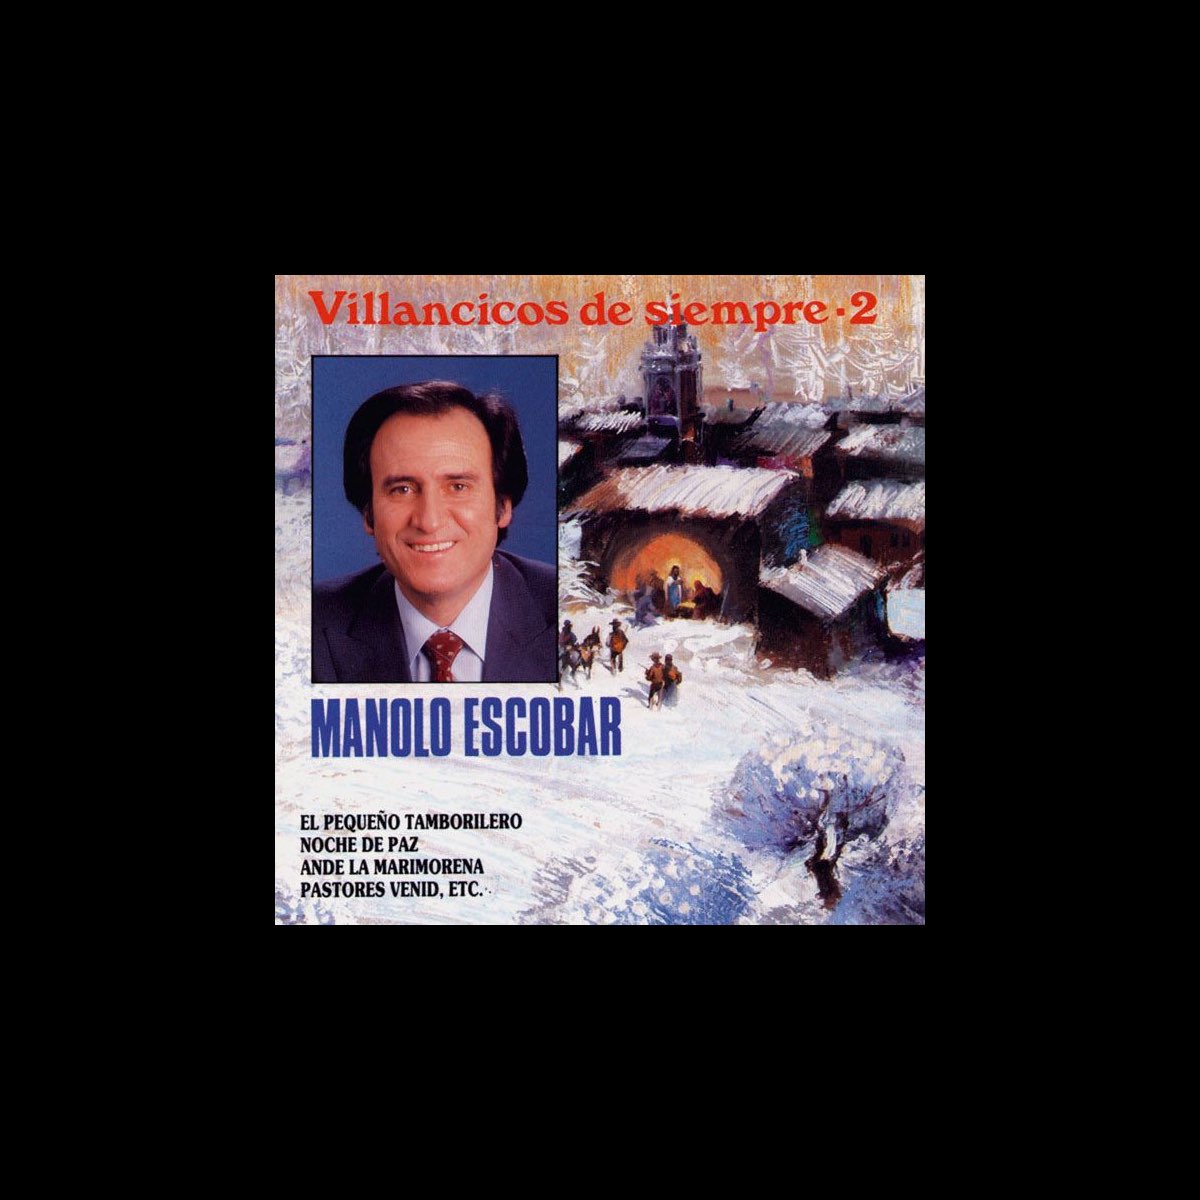 Villancicos de Siempre Vol.2 by Manolo Escobar on Apple Music